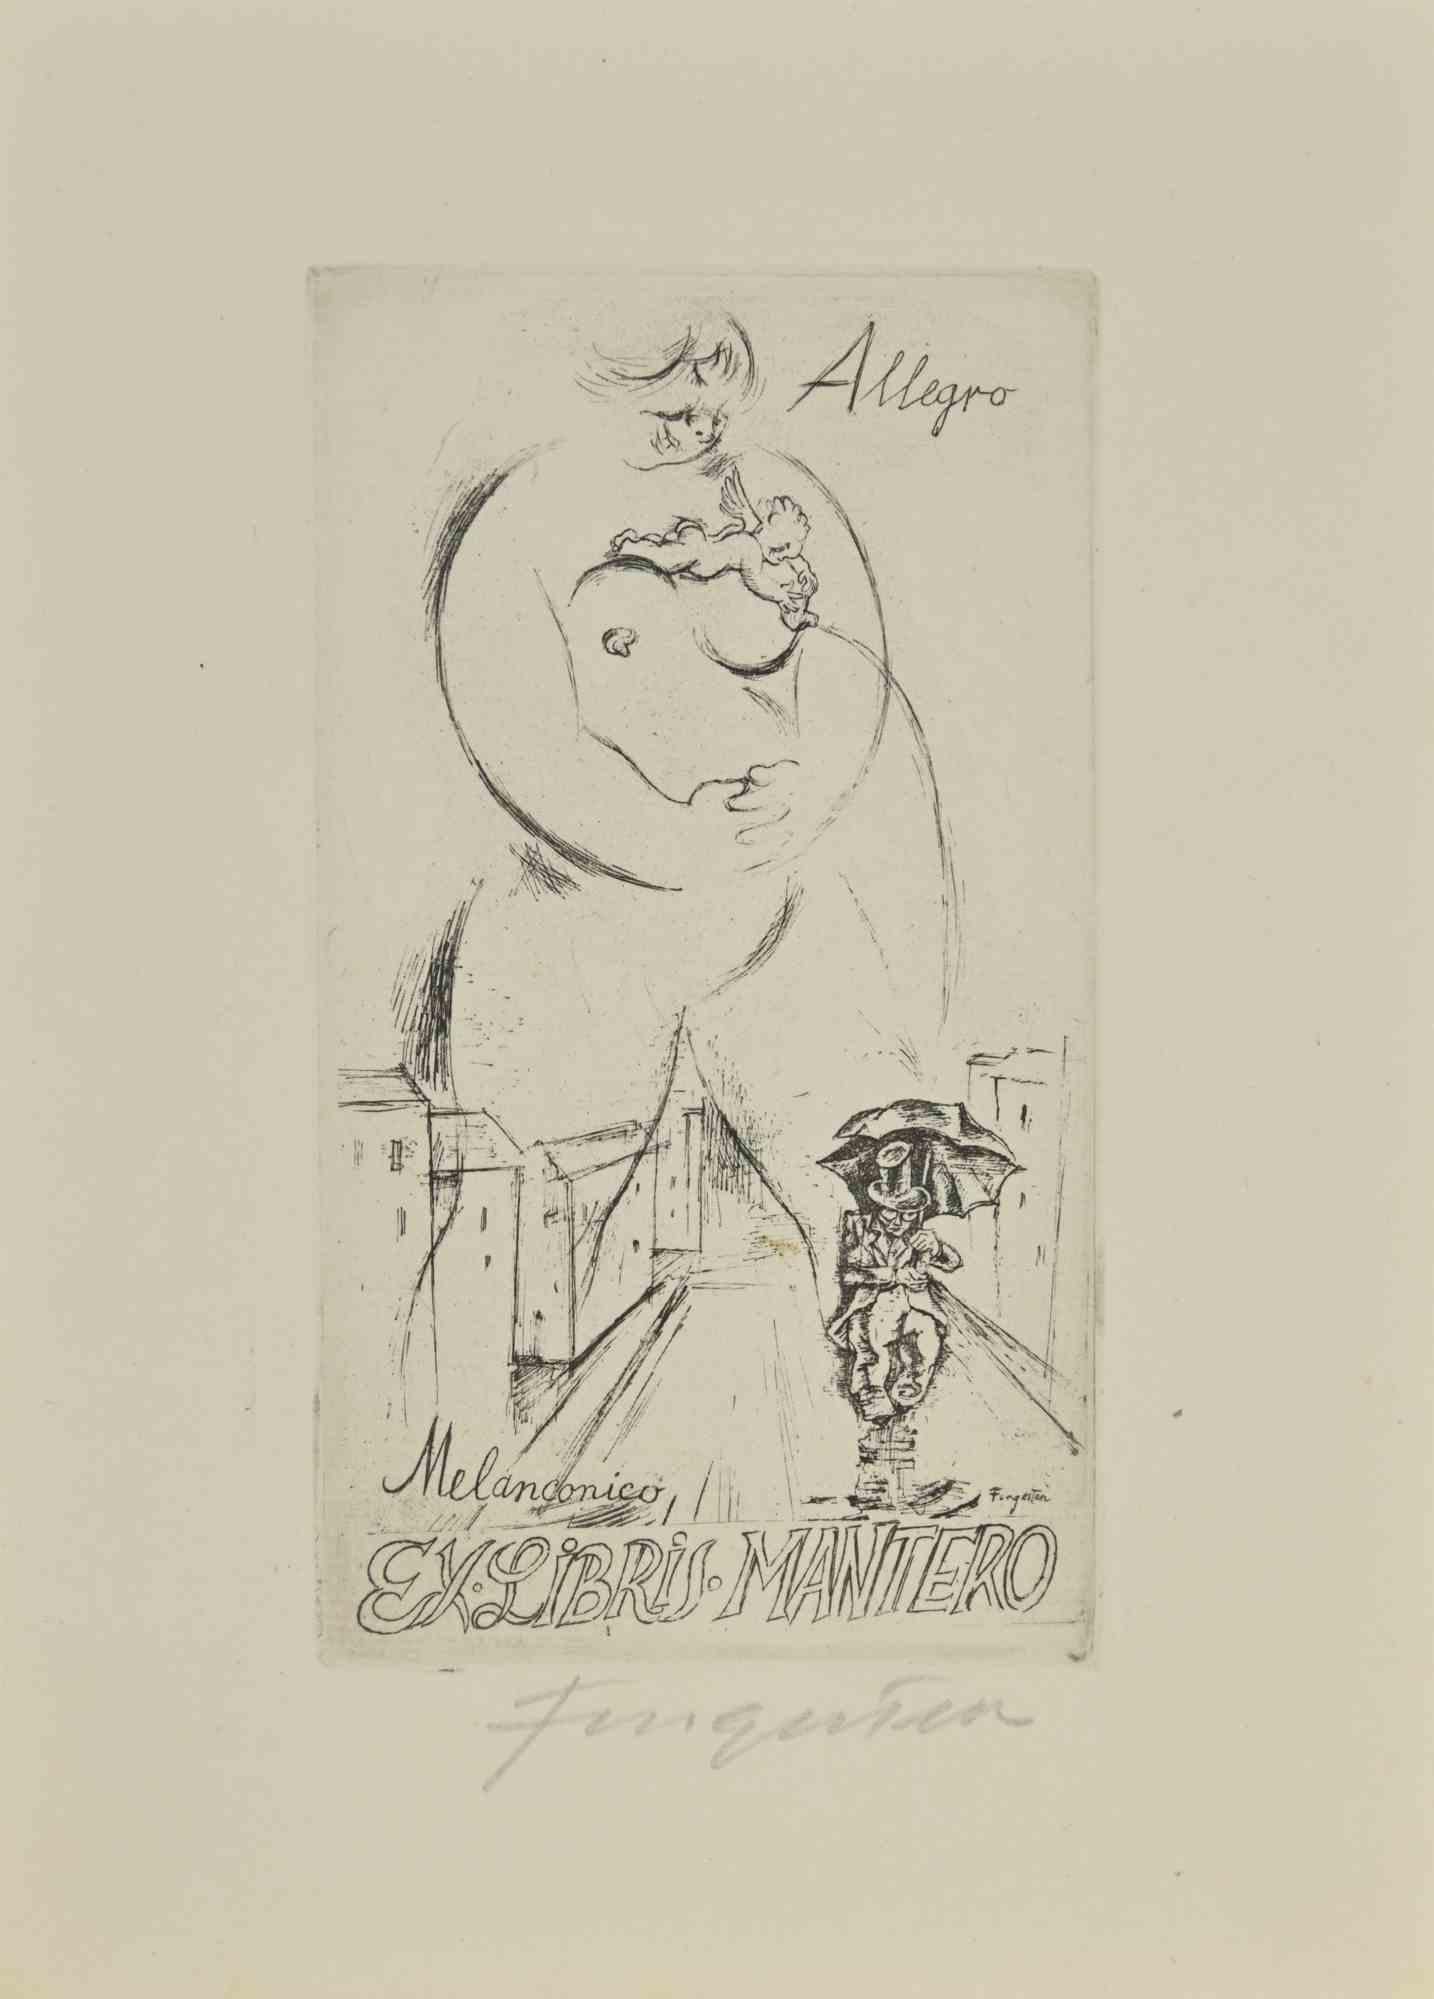 Ex Libris - Michele - Melanconico-Allegro est une gravure à l'eau-forte créée par Michel Fingesten.

Signé à la main dans la marge inférieure.

Bonnes conditions.

Michel Fingesten (1884 - 1943) était un peintre et graveur tchèque d'origine juive.